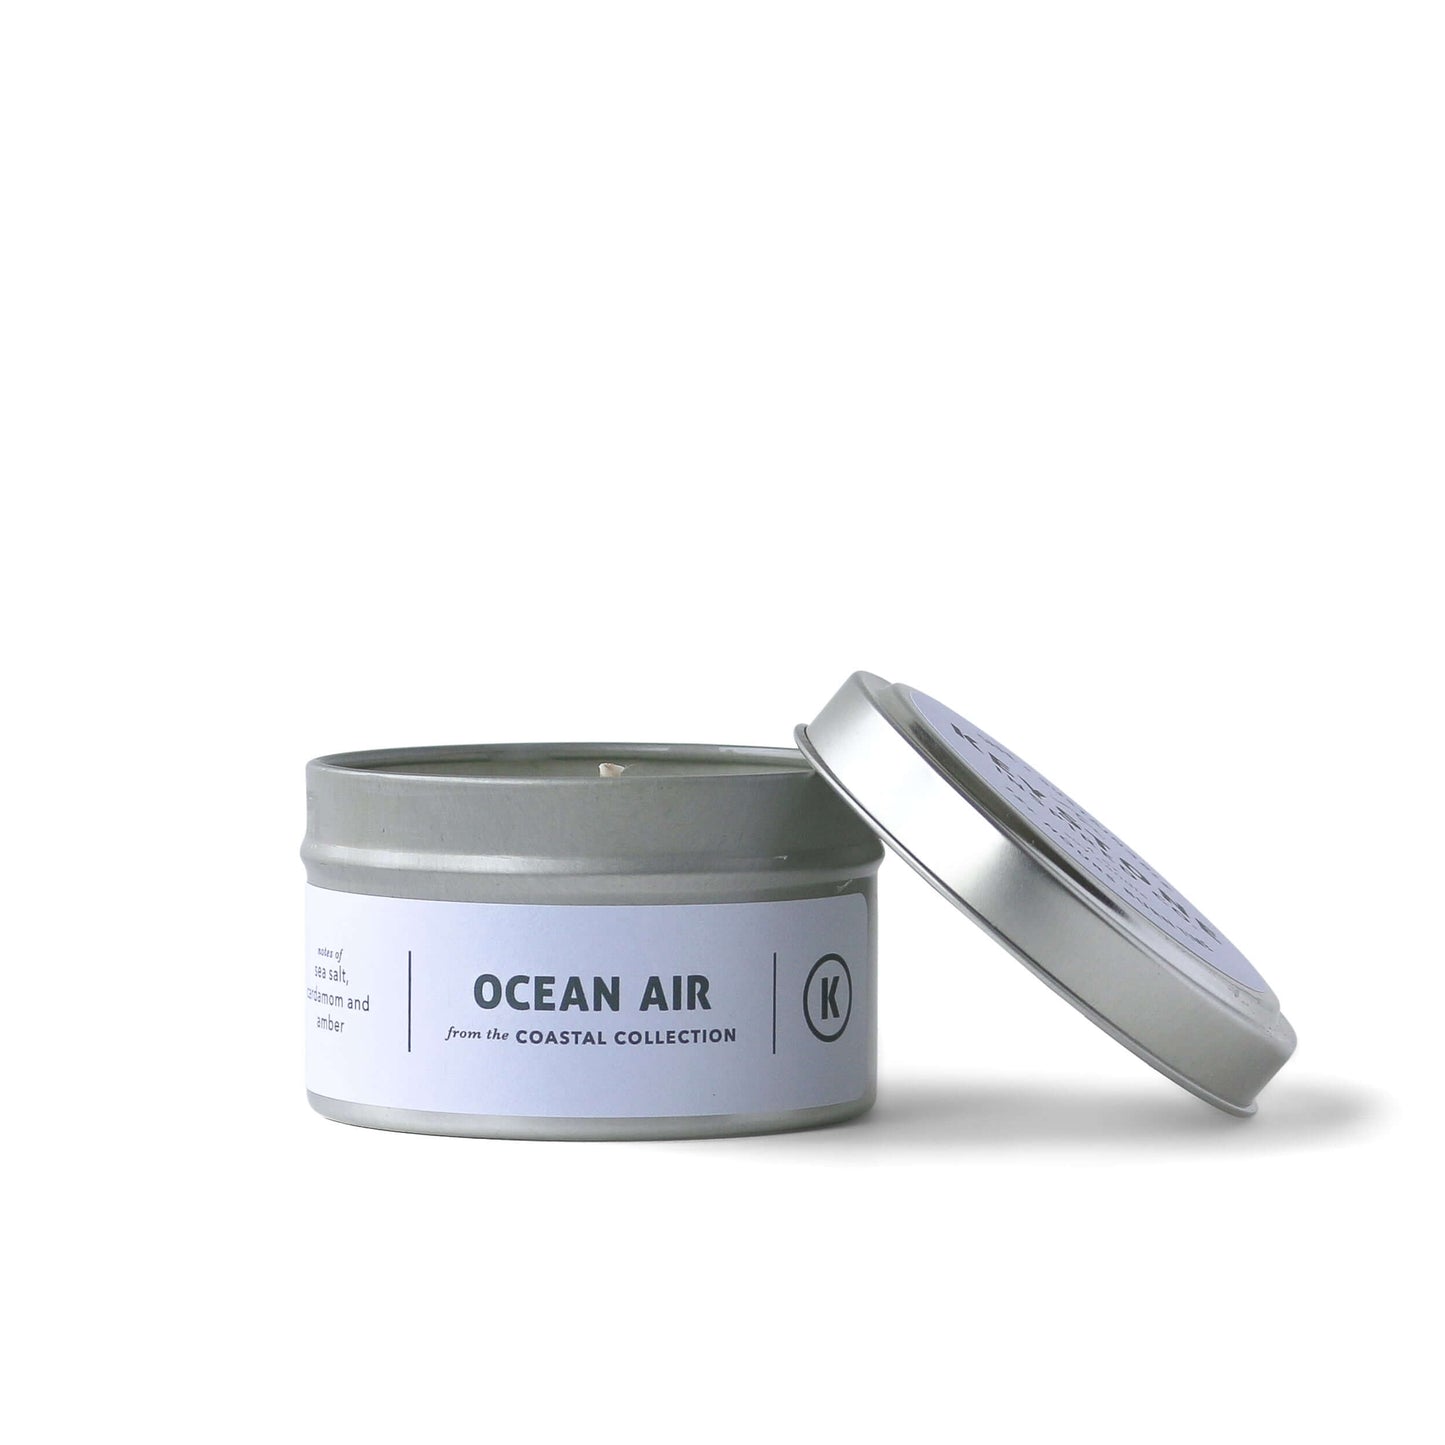 Eco-friendly Ocean Air | Coastal Collection | 4 oz tin candle